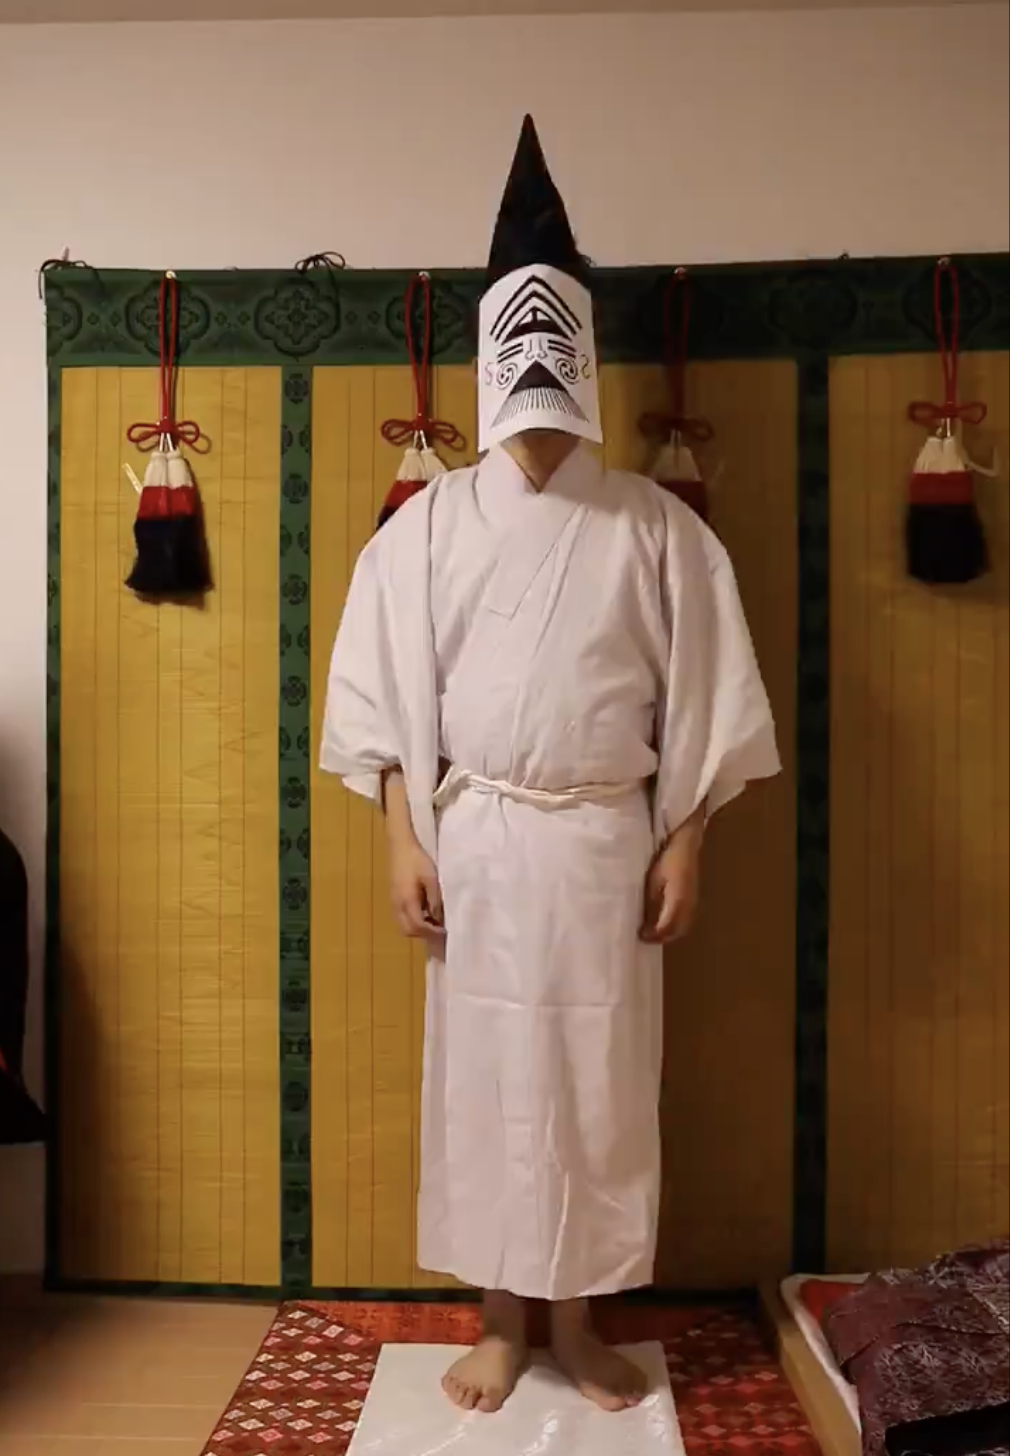 和室にいる人物が白い着物を着て、顔には伝統的な紙のお面をかぶっています。